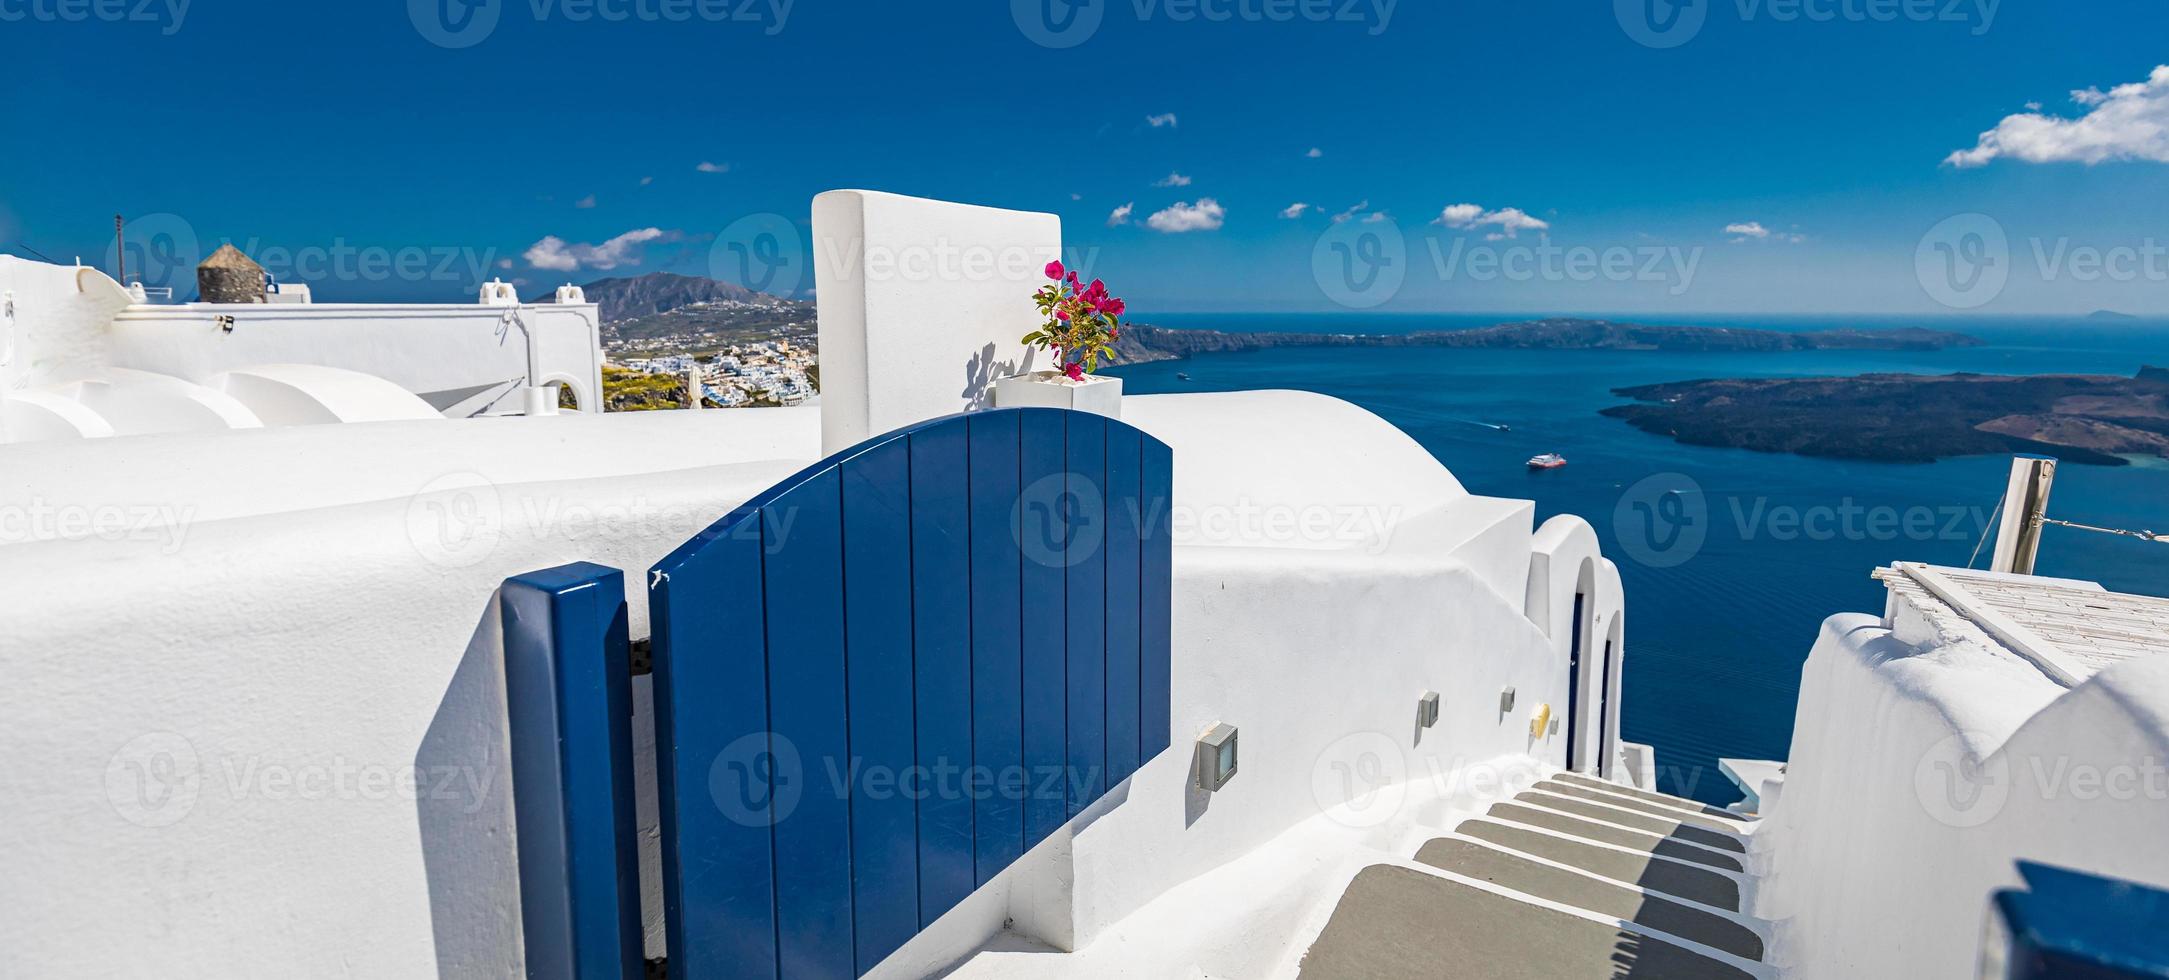 Panorama der Insel Santorini. blaue tür mit caldera-blick, romantische straßenarchitektur, paar reisen urlaub landschaft ziel landschaftlich. tourismusansicht, erstaunliche stimmung des himmelmeeres griechenland. Sommerromantikurlaub foto